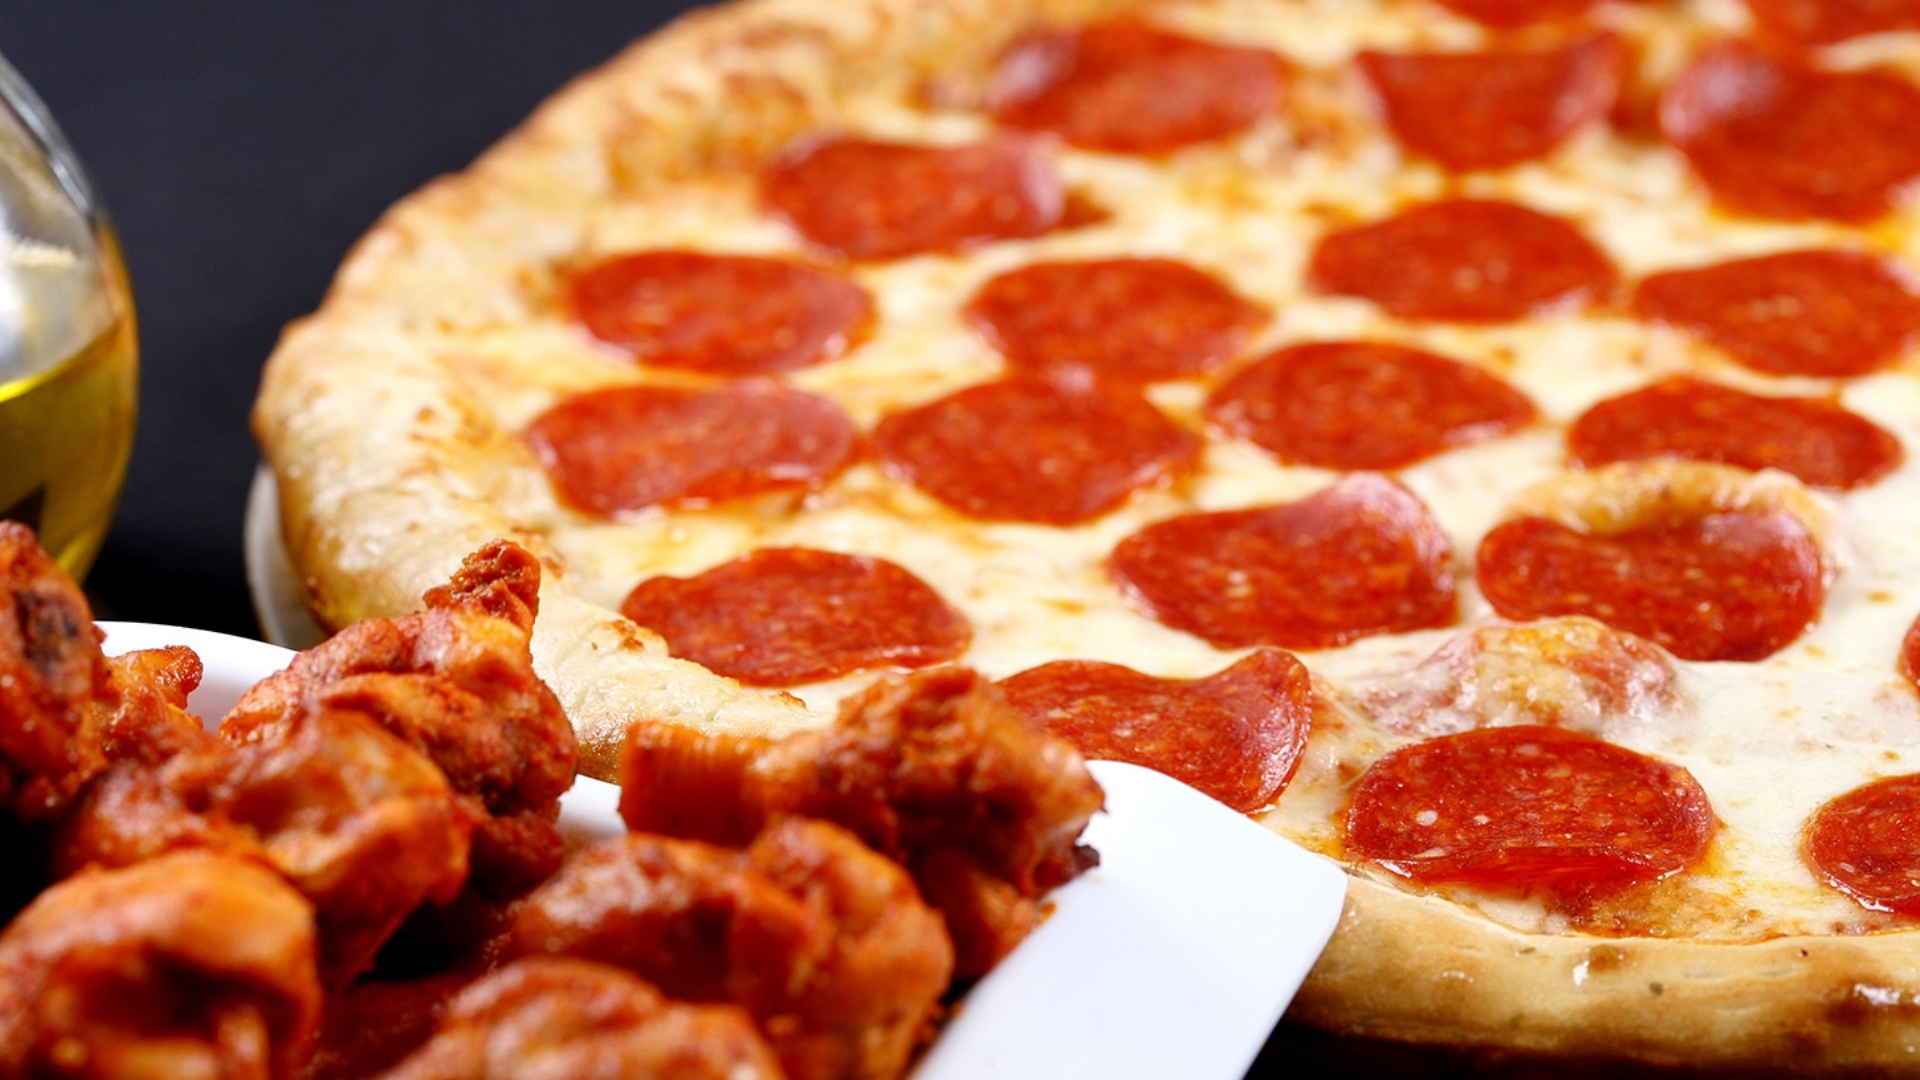 La pizza es el platillo favorito para disfrutar del Super Bowl. En Estados Unidos, una de cada siete personas hace un pedido a domicilio durante el domingo del juego, lo que equivale a cerca de 13 millones de cajas de pizza. El segundo platillo más consumido es el pollo, ya sea en alitas o boneless.